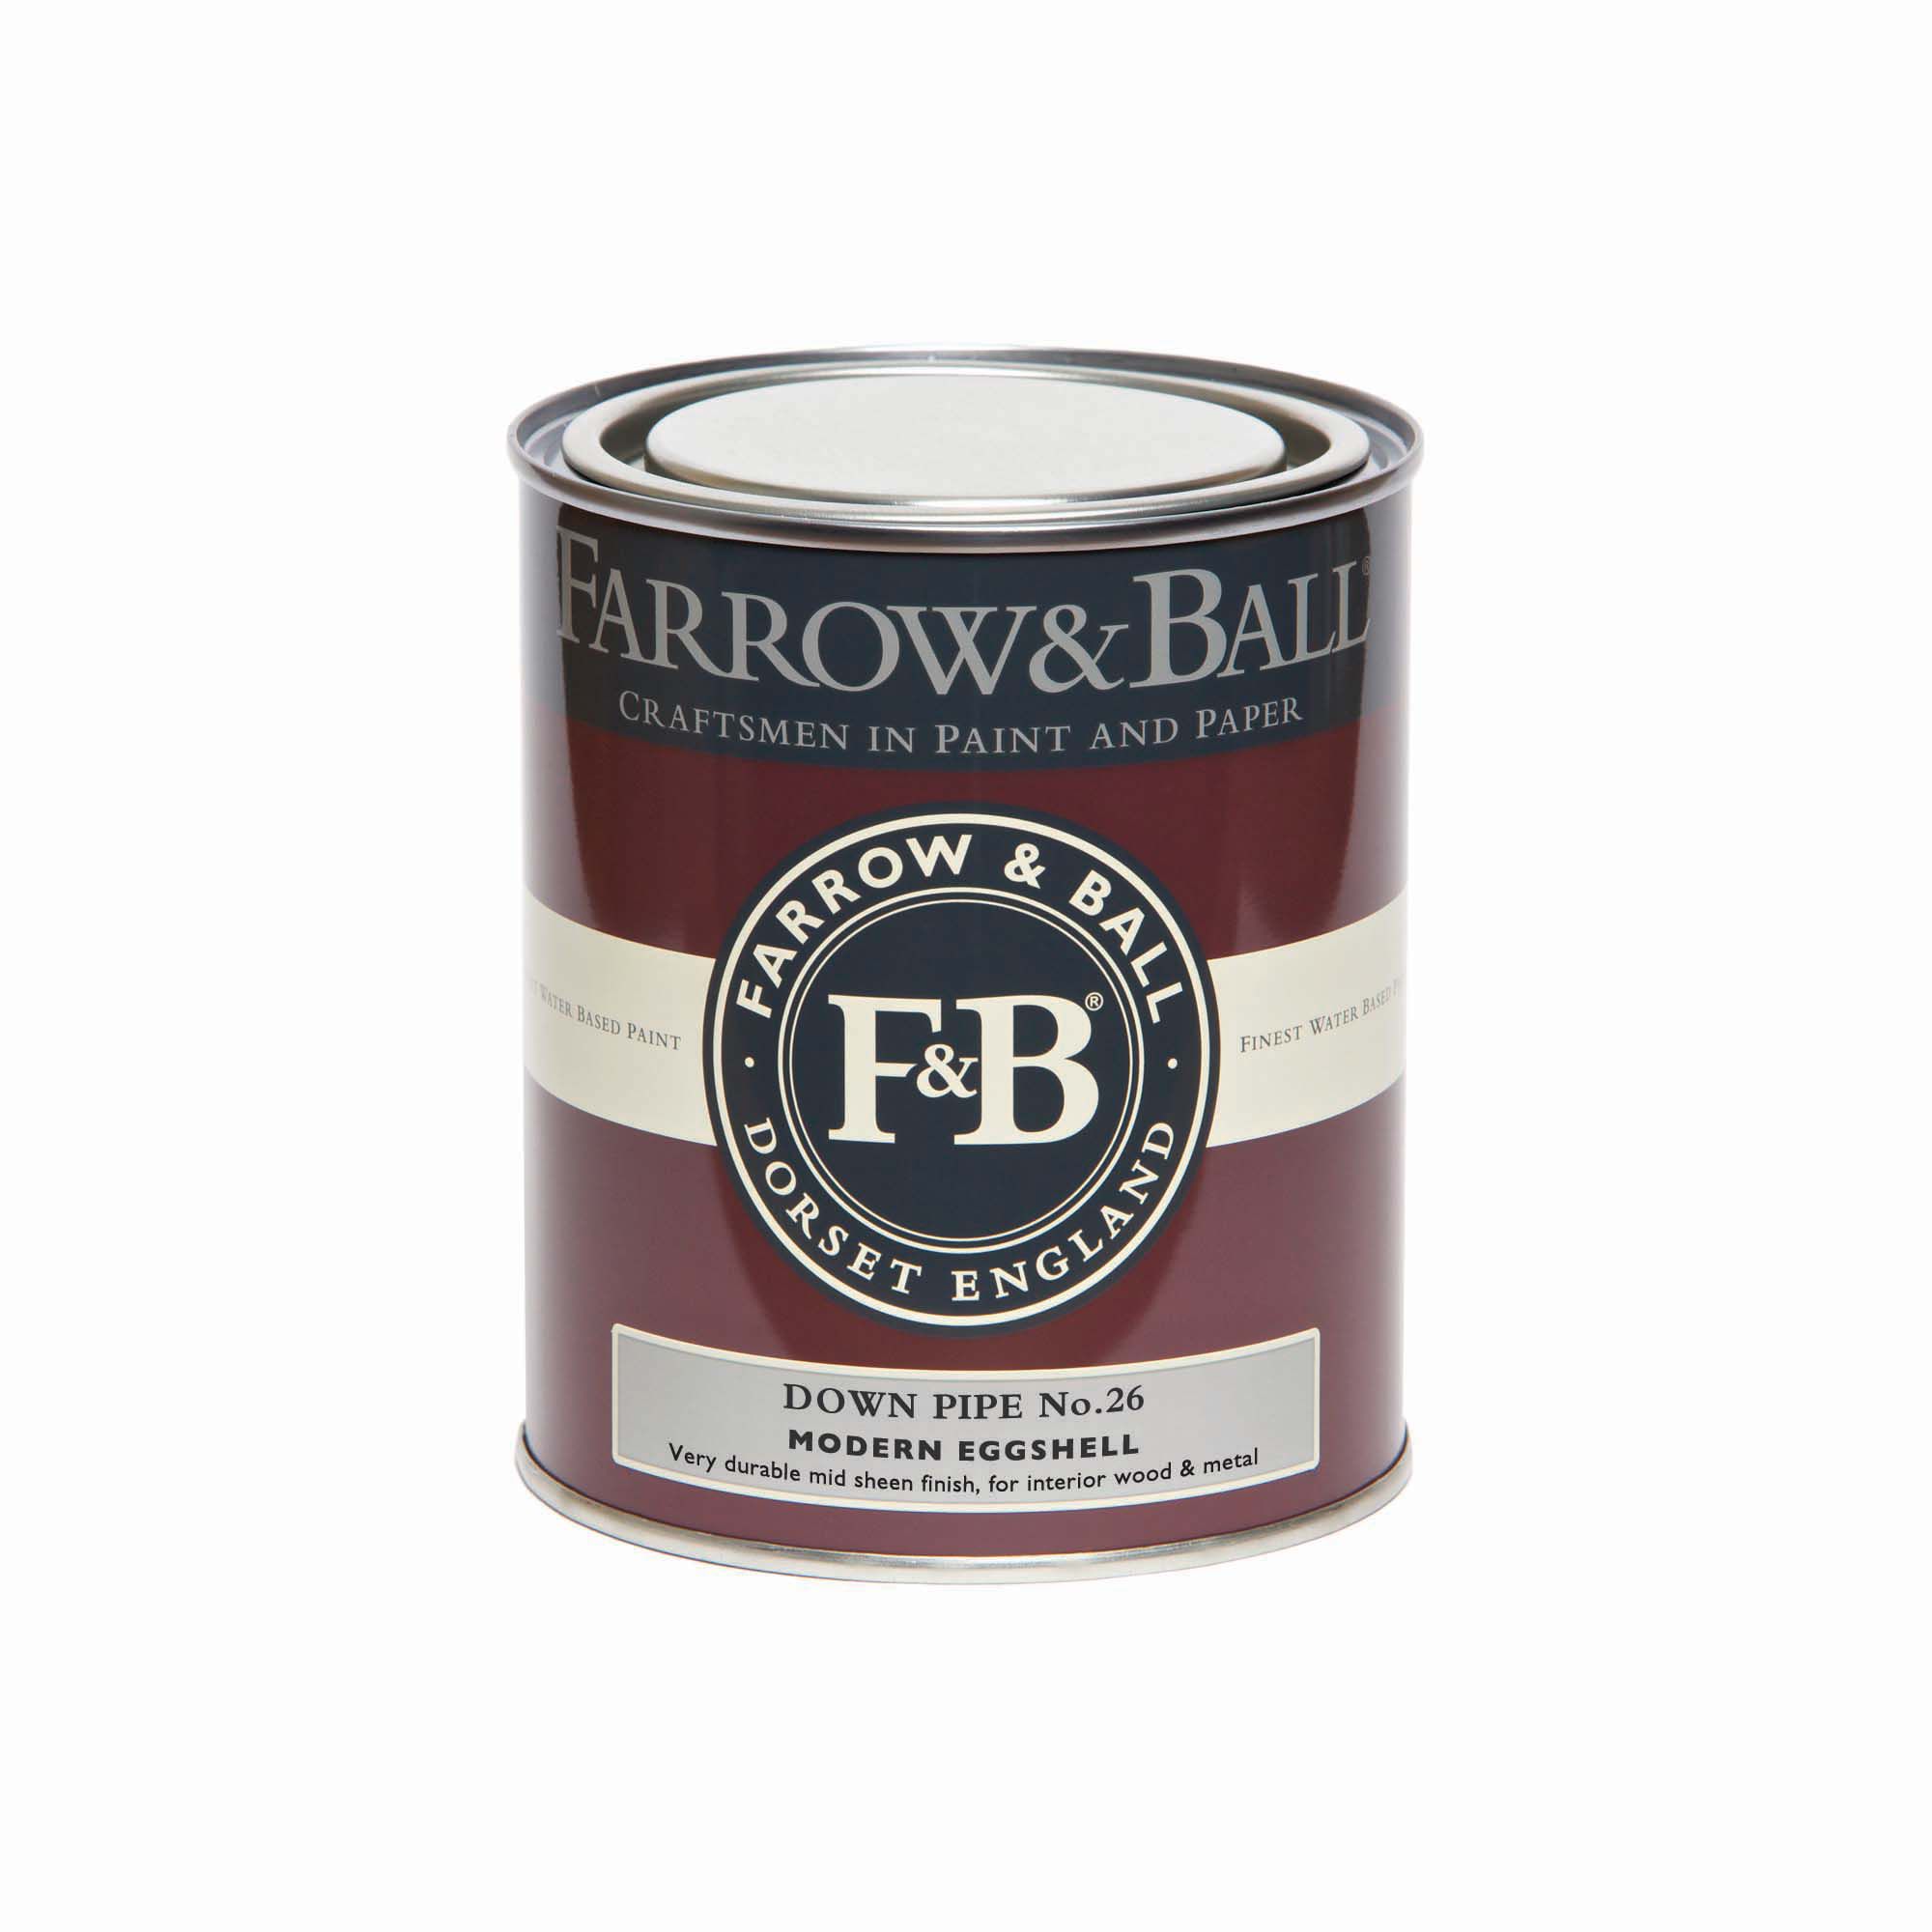 Farrow & Ball Modern Down Pipe No.26 Eggshell Paint, 750ml